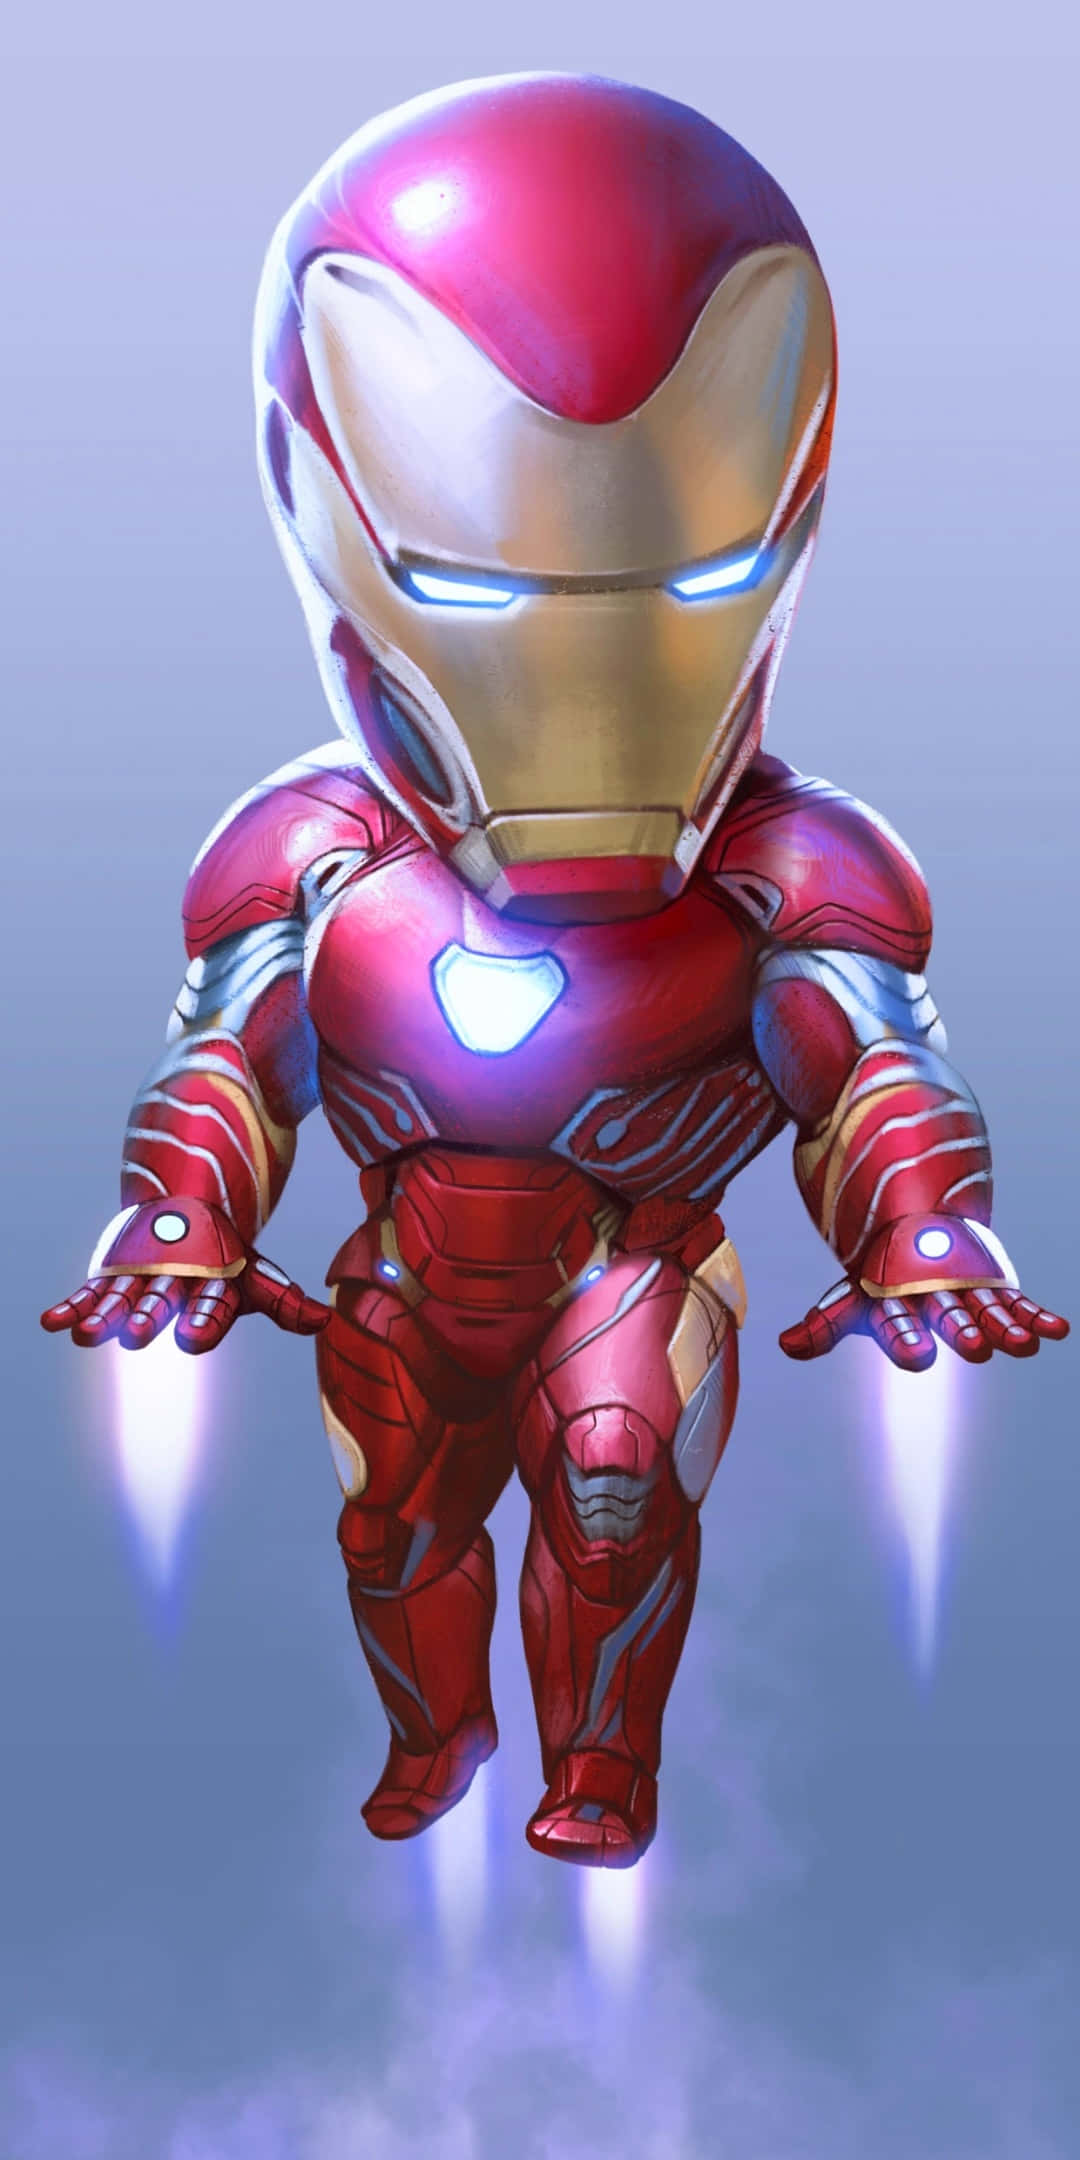 Pixel3 Fondo De Pantalla De Iron Man Volando En Versión Chibi